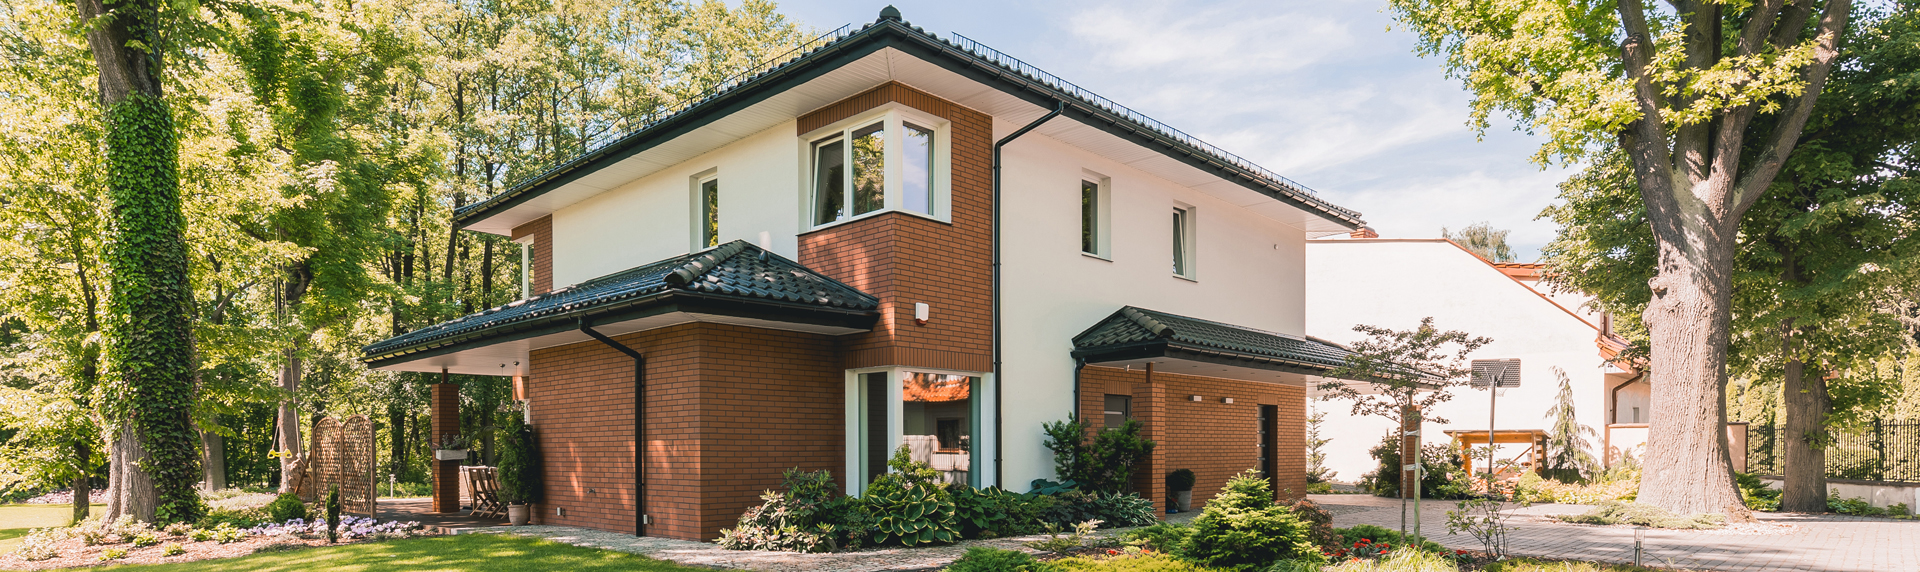 Häuser kaufen oder mieten Immobilienangebote in Dresden Chemnitz Leipzig